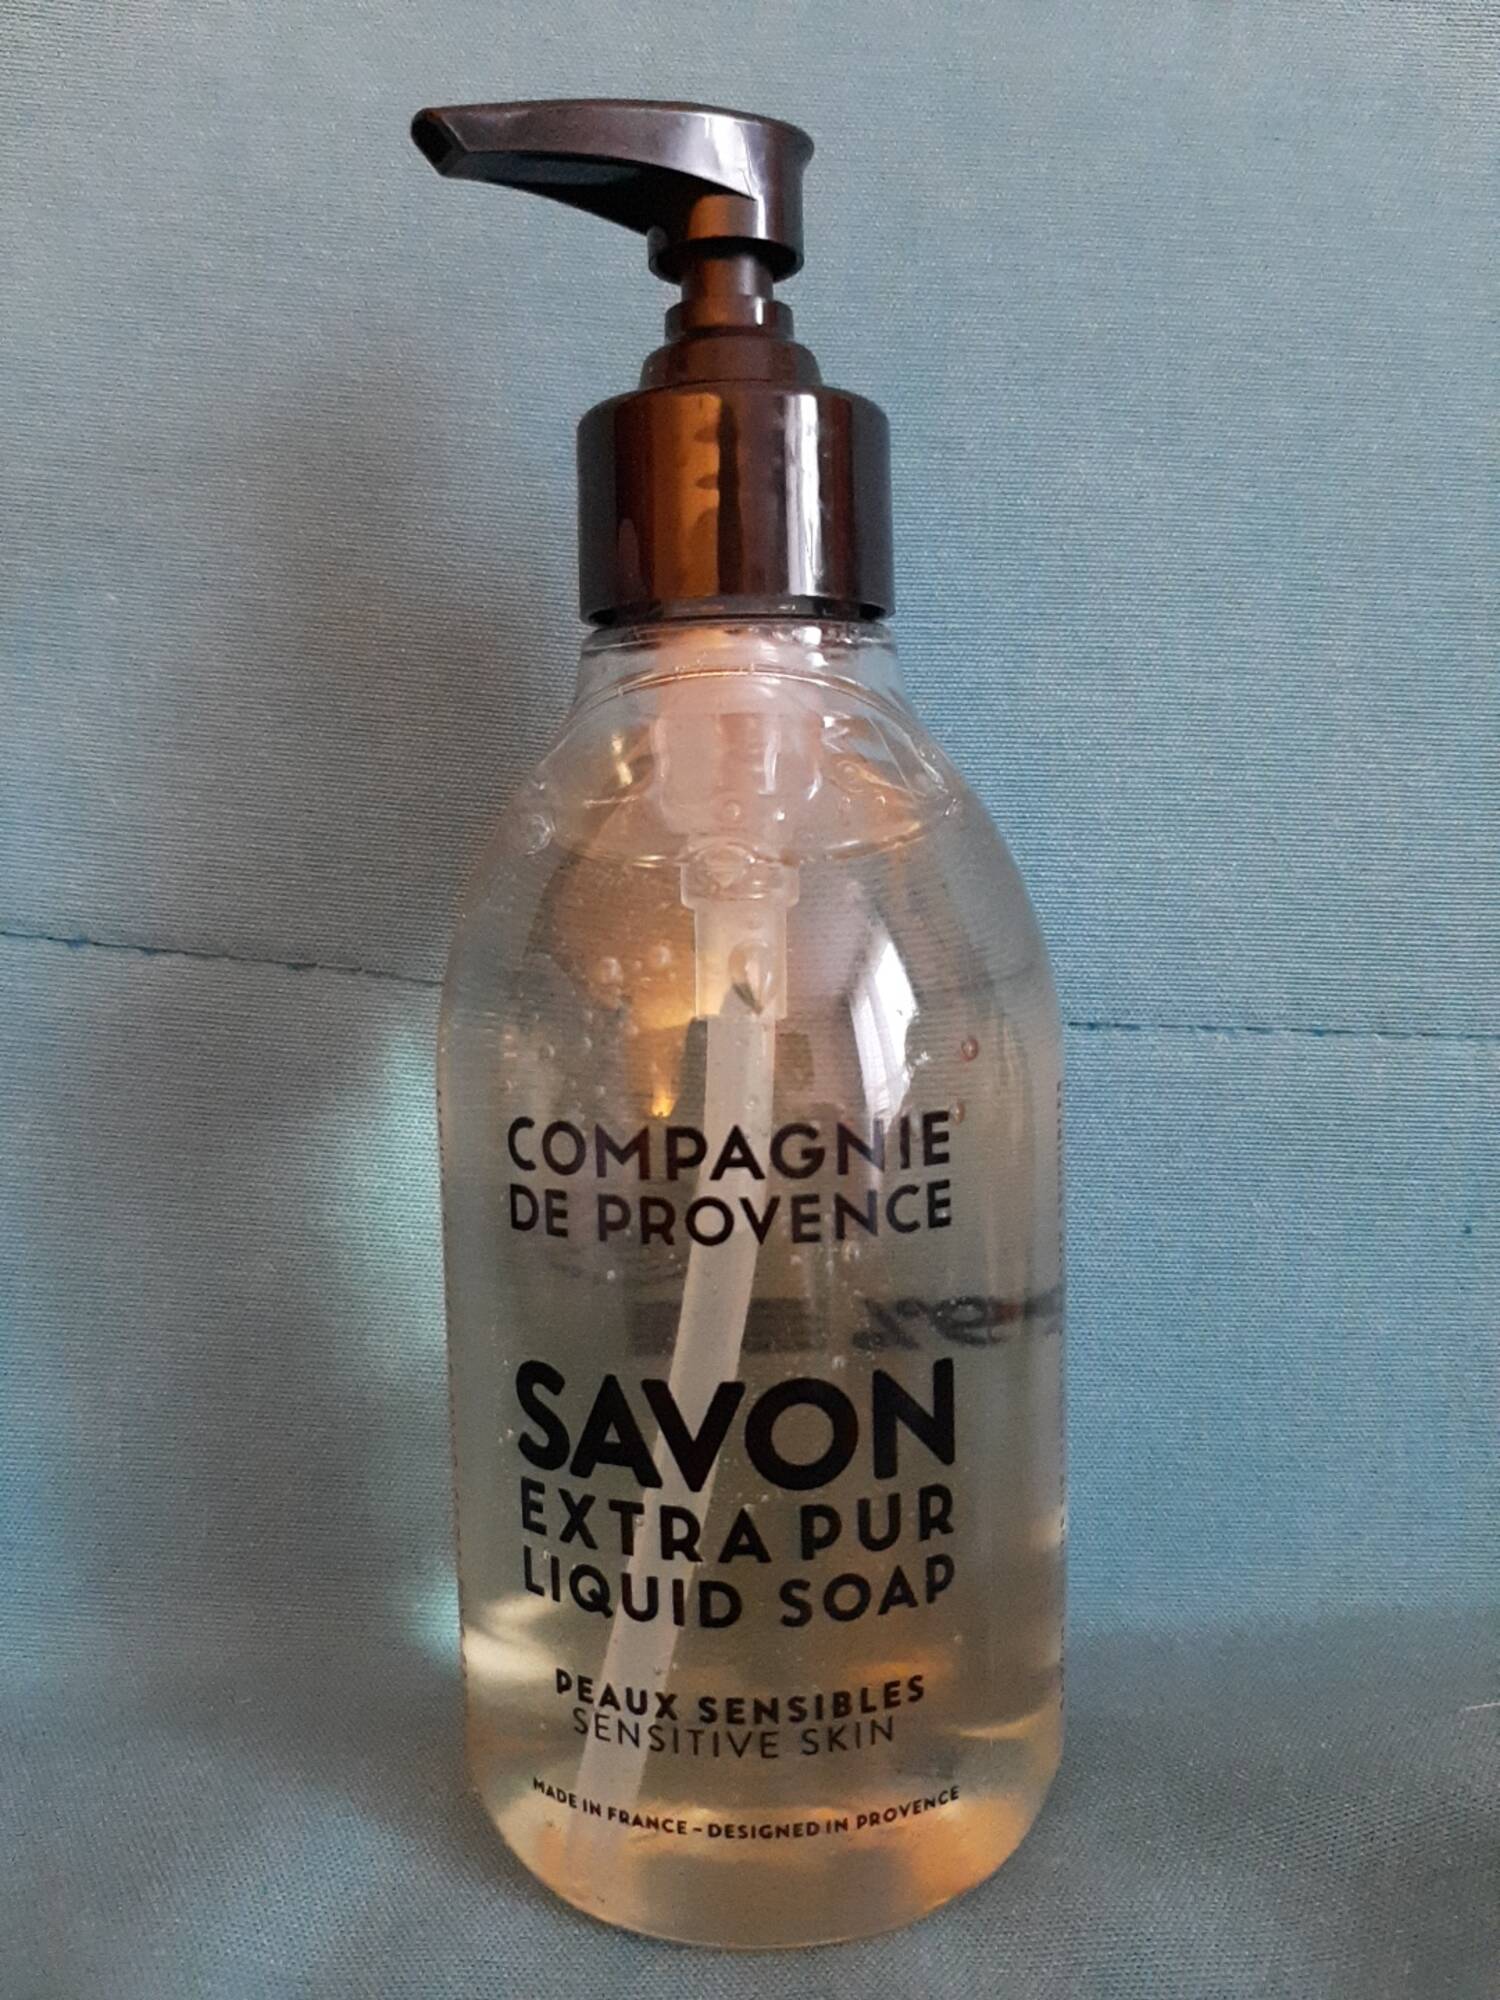 COMPAGNIE DE PROVENCE - Peaux sensibles - Savon liquide extra pur